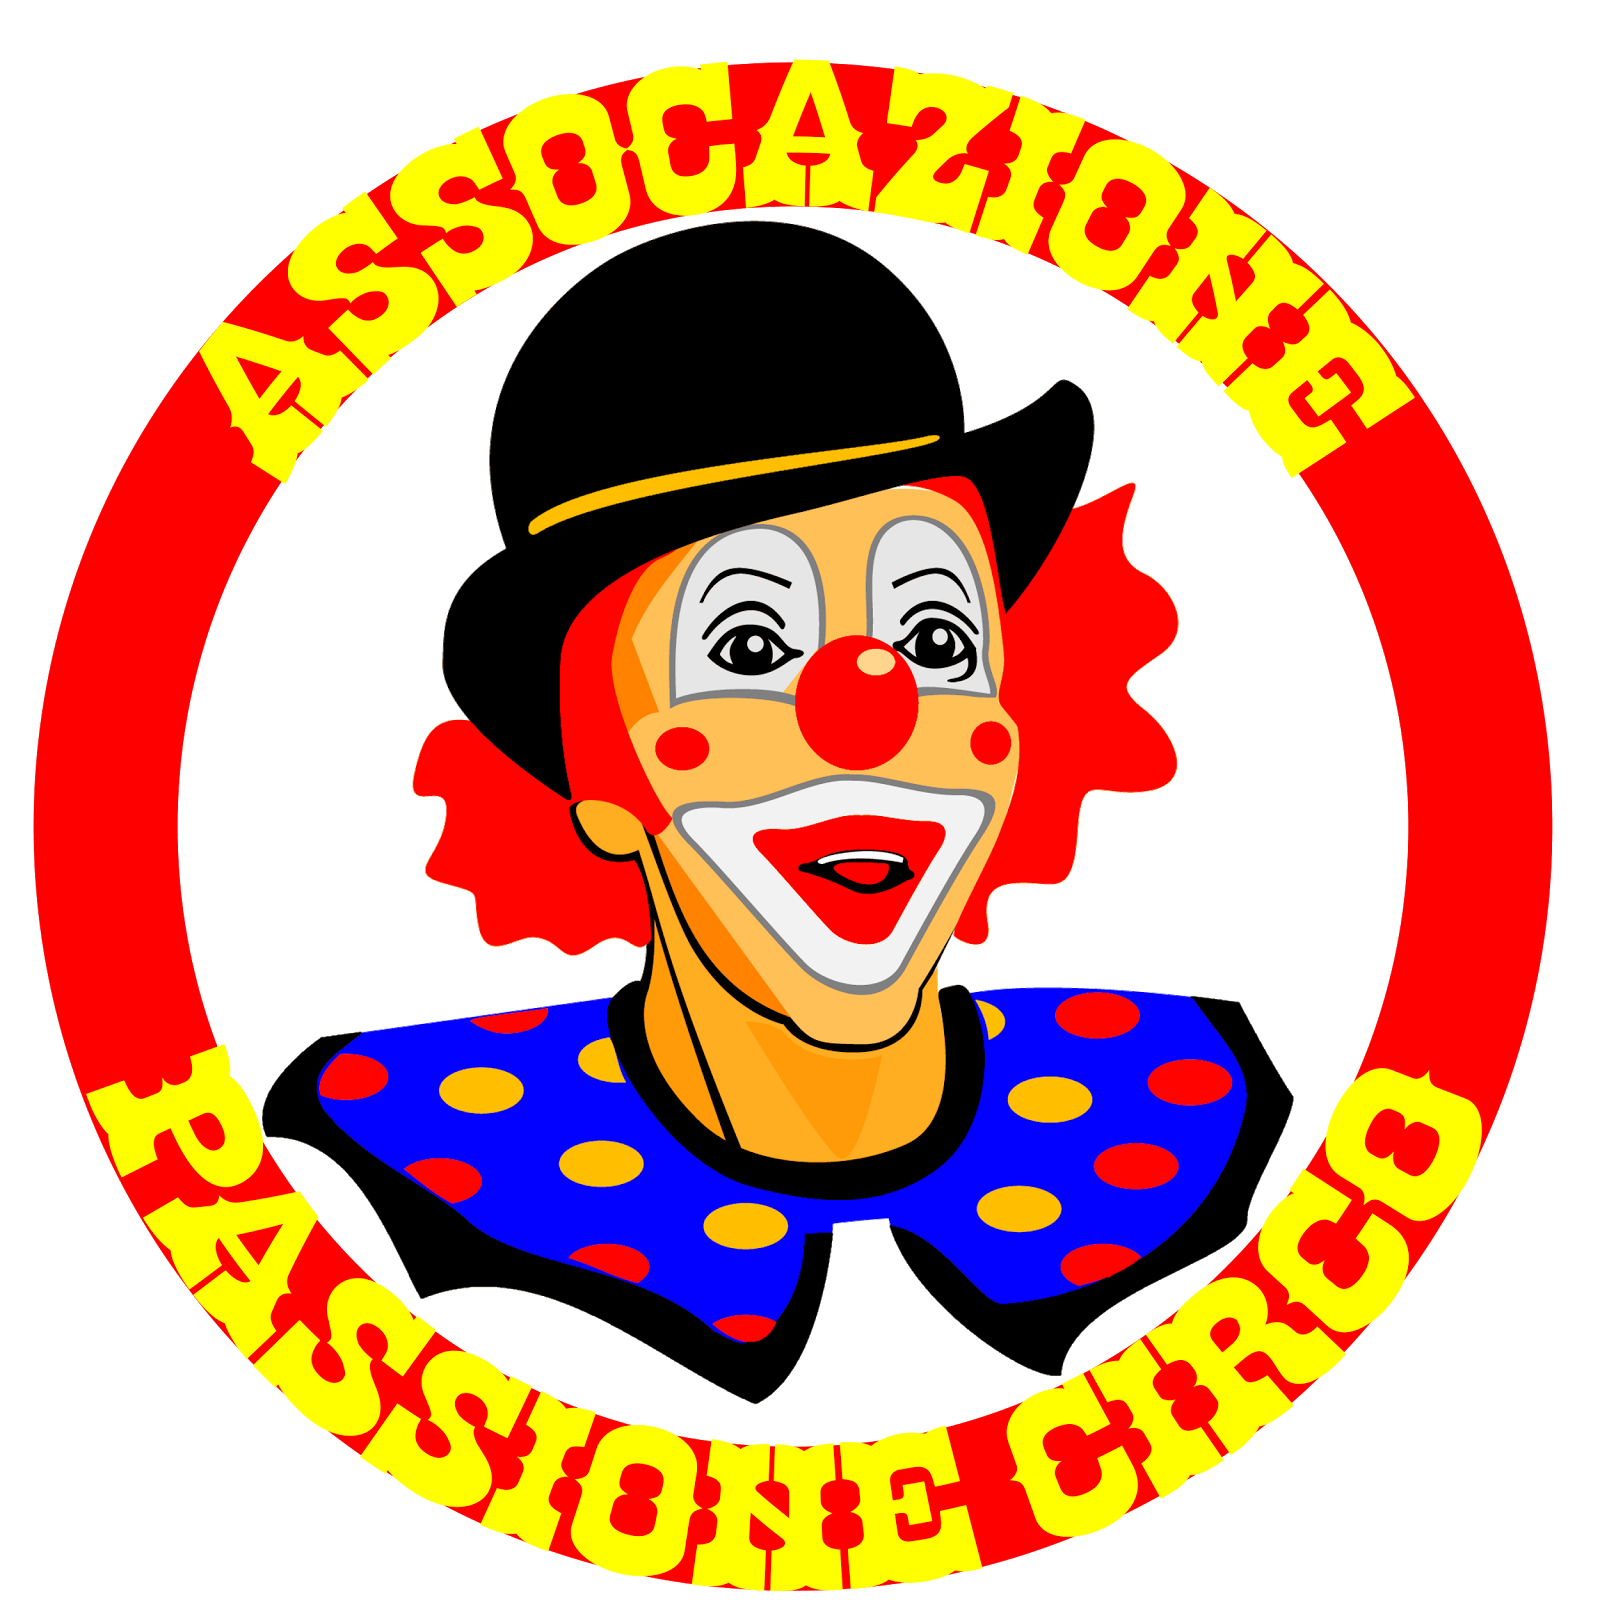 ASSOCIAZIONE PASSIONE CIRCO